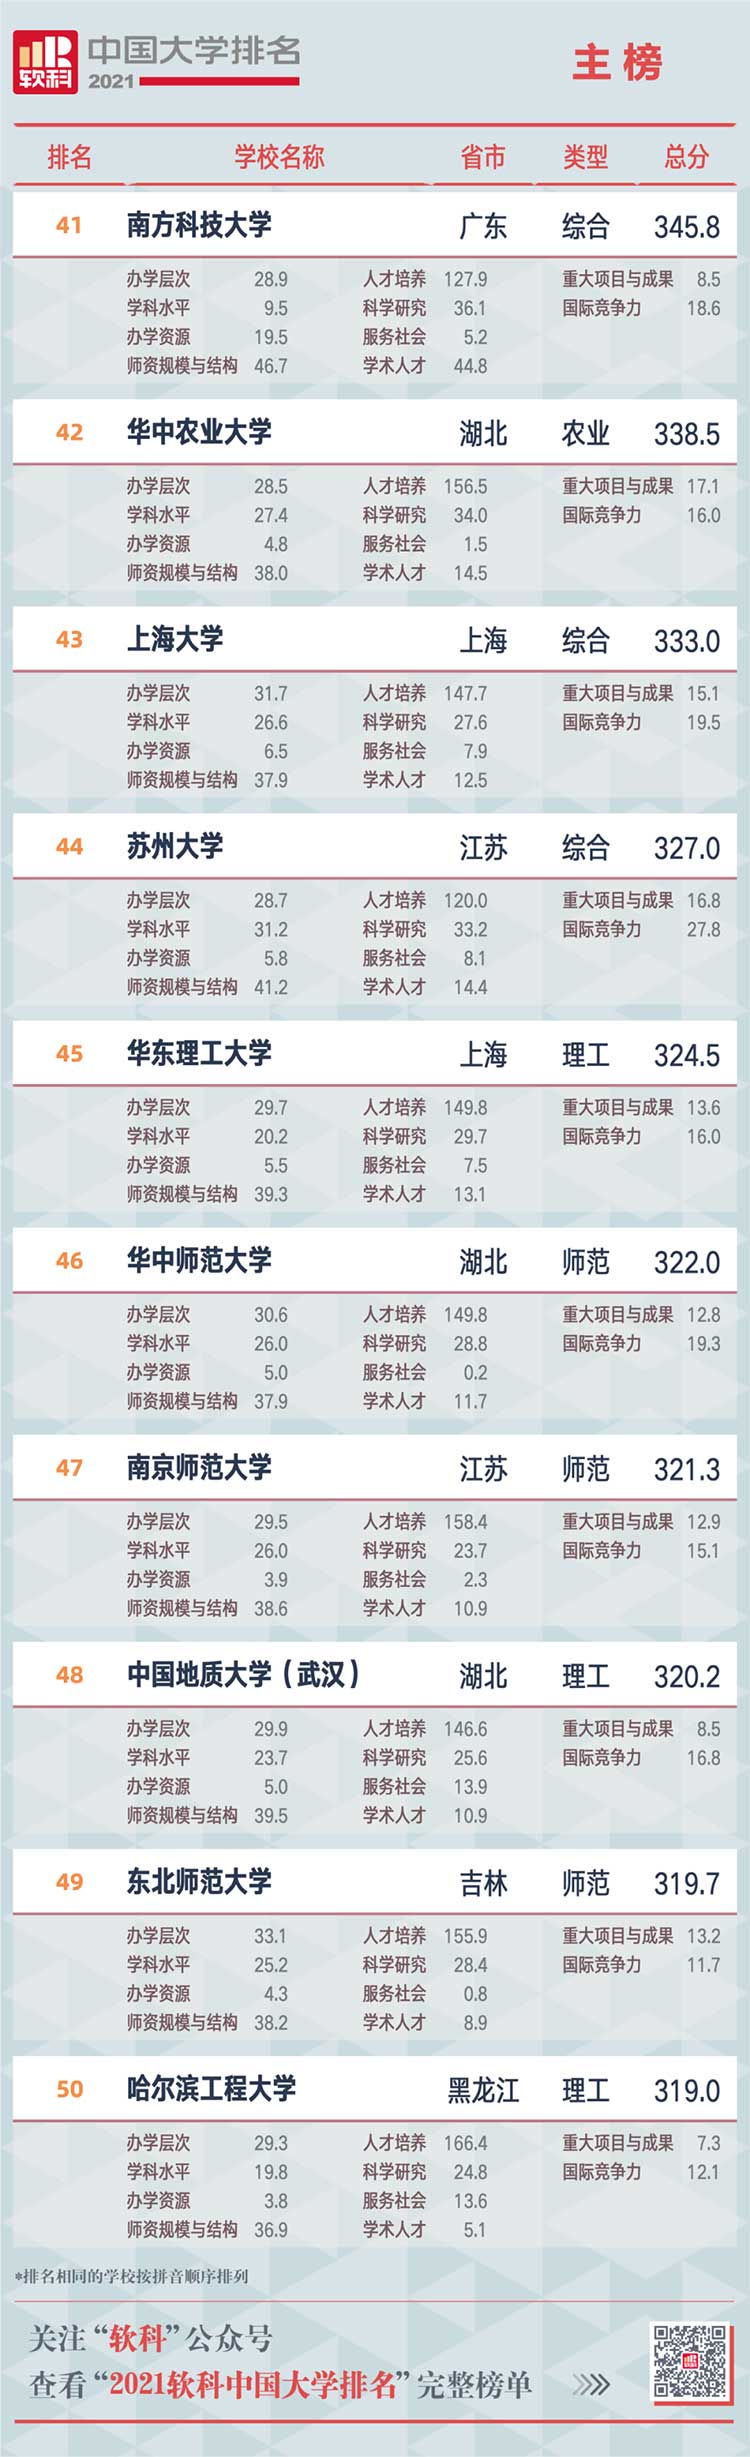 2019年中国大学排行榜_2021年中国大学排行榜权威发布,前100名